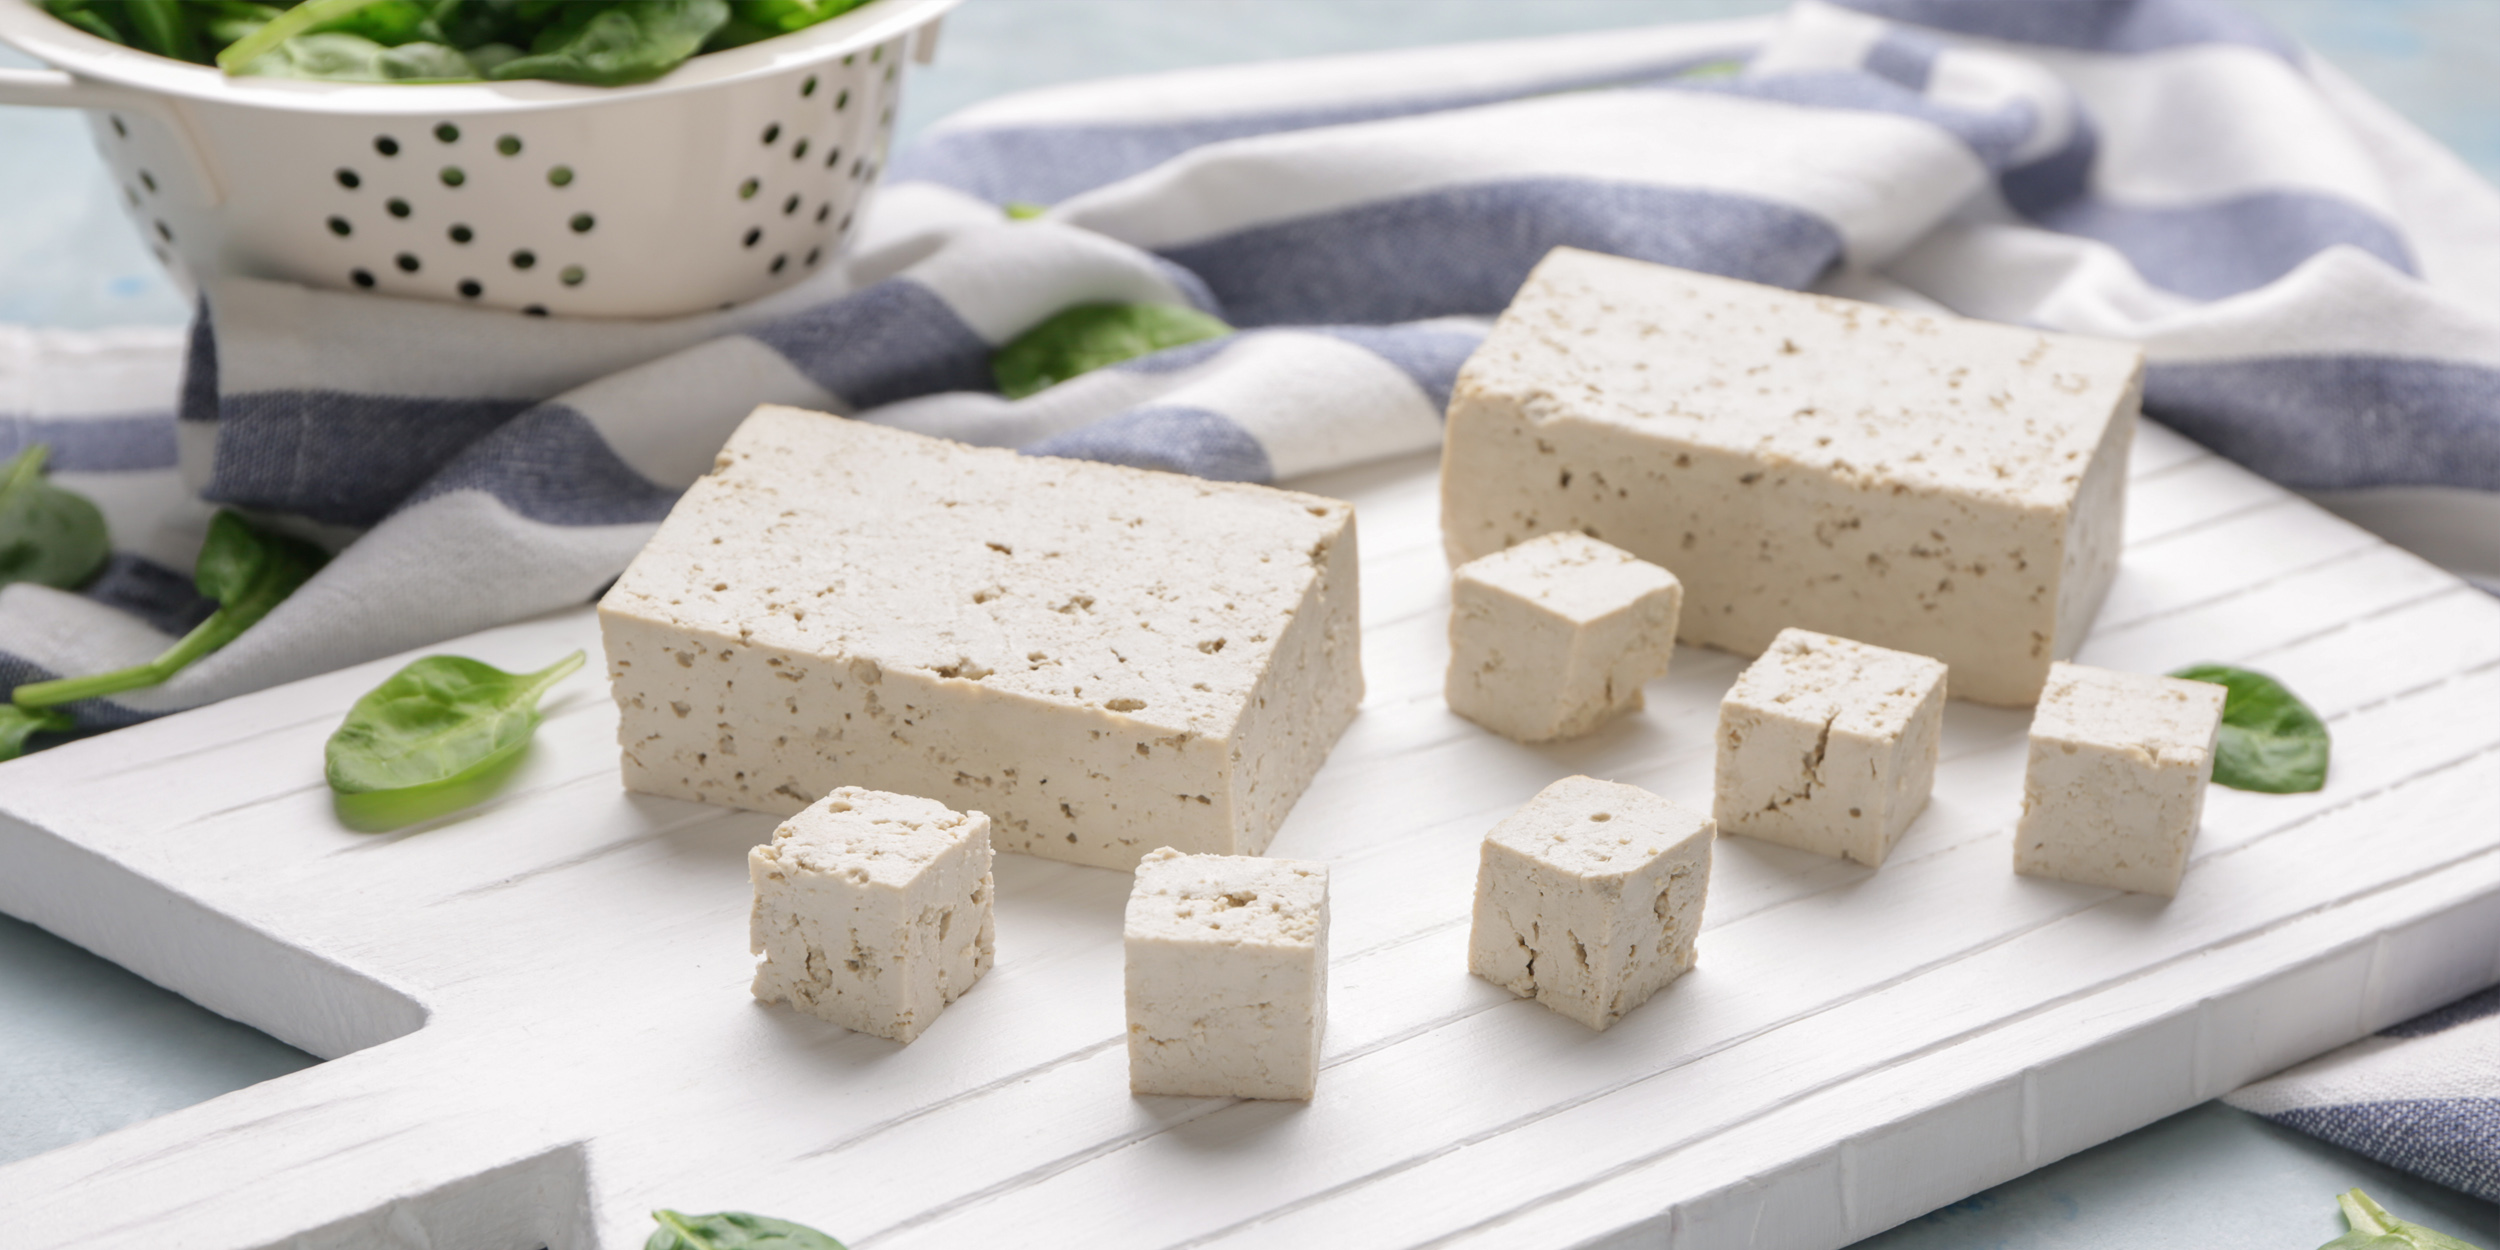 Сыр растительного происхождения. Tofu - сыр тофу. Соевый творог тофу. Японский сыр. Растительный сыр тофу.